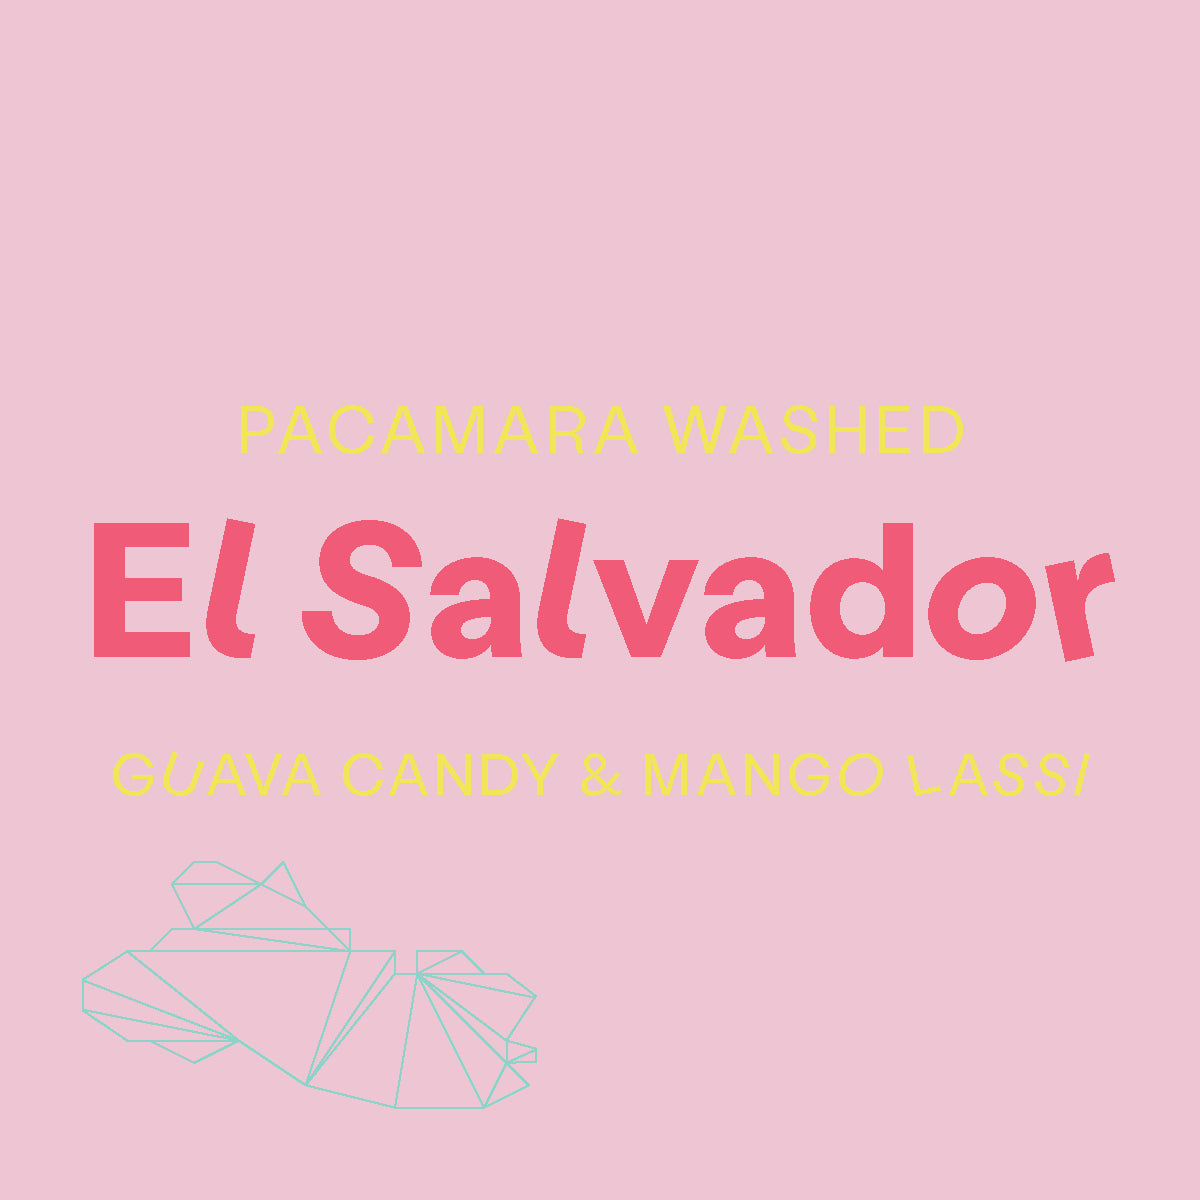 El Salvador, Pacamara